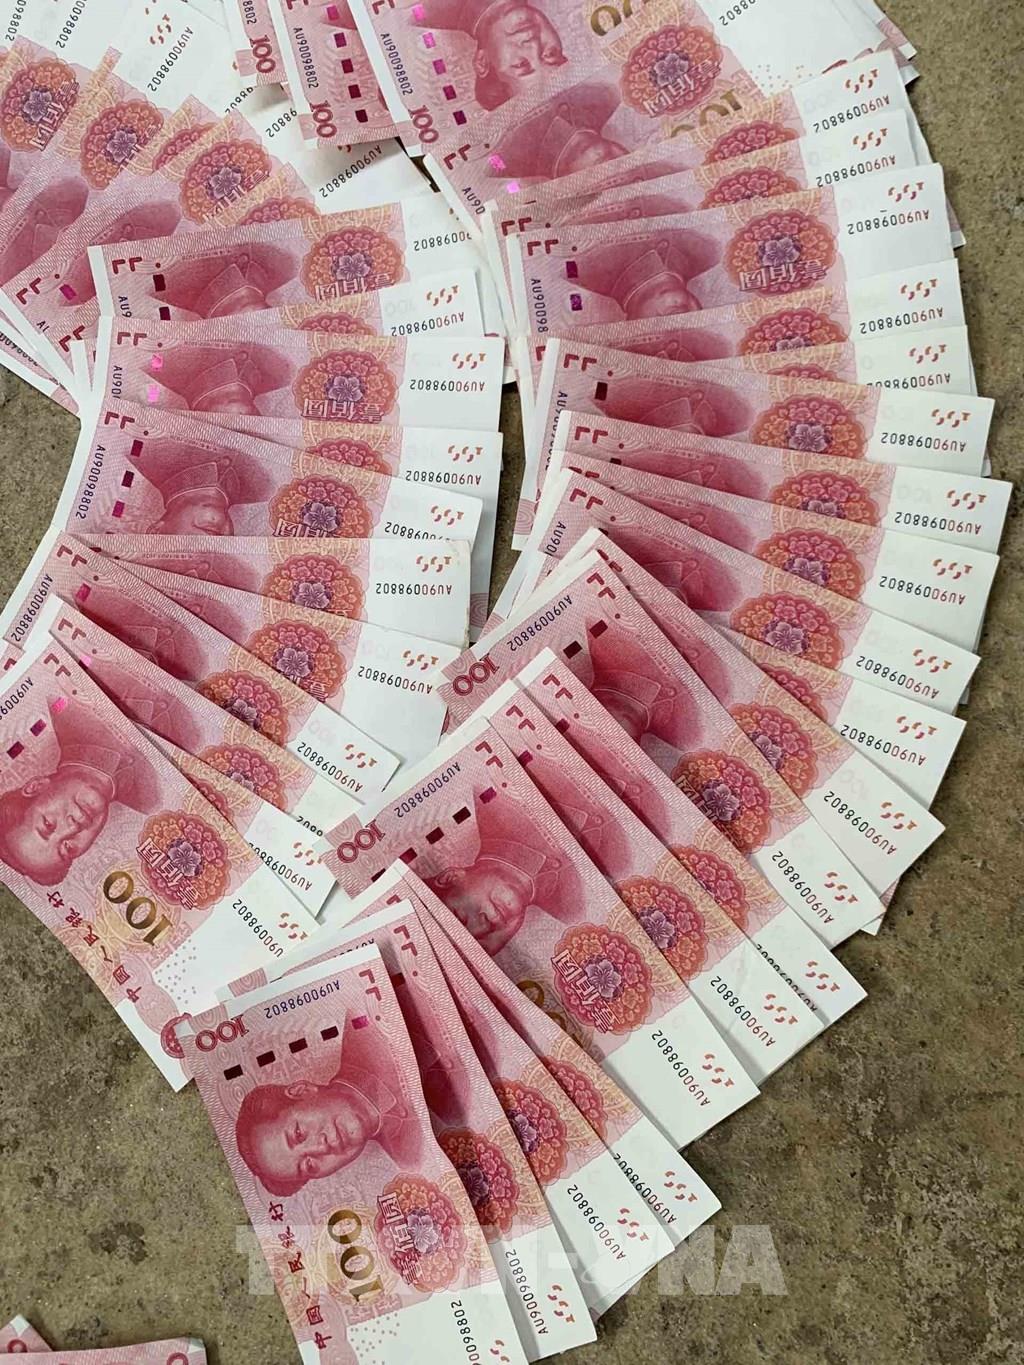 Tiền Trung Quốc giả là một vấn đề đang lan truyền trên thế giới. Qua những hình ảnh về tiền Trung Quốc giả, bạn sẽ thấy được cách phân biệt tiền thật và tiền giả, từ đó bảo vệ được tài sản của mình.